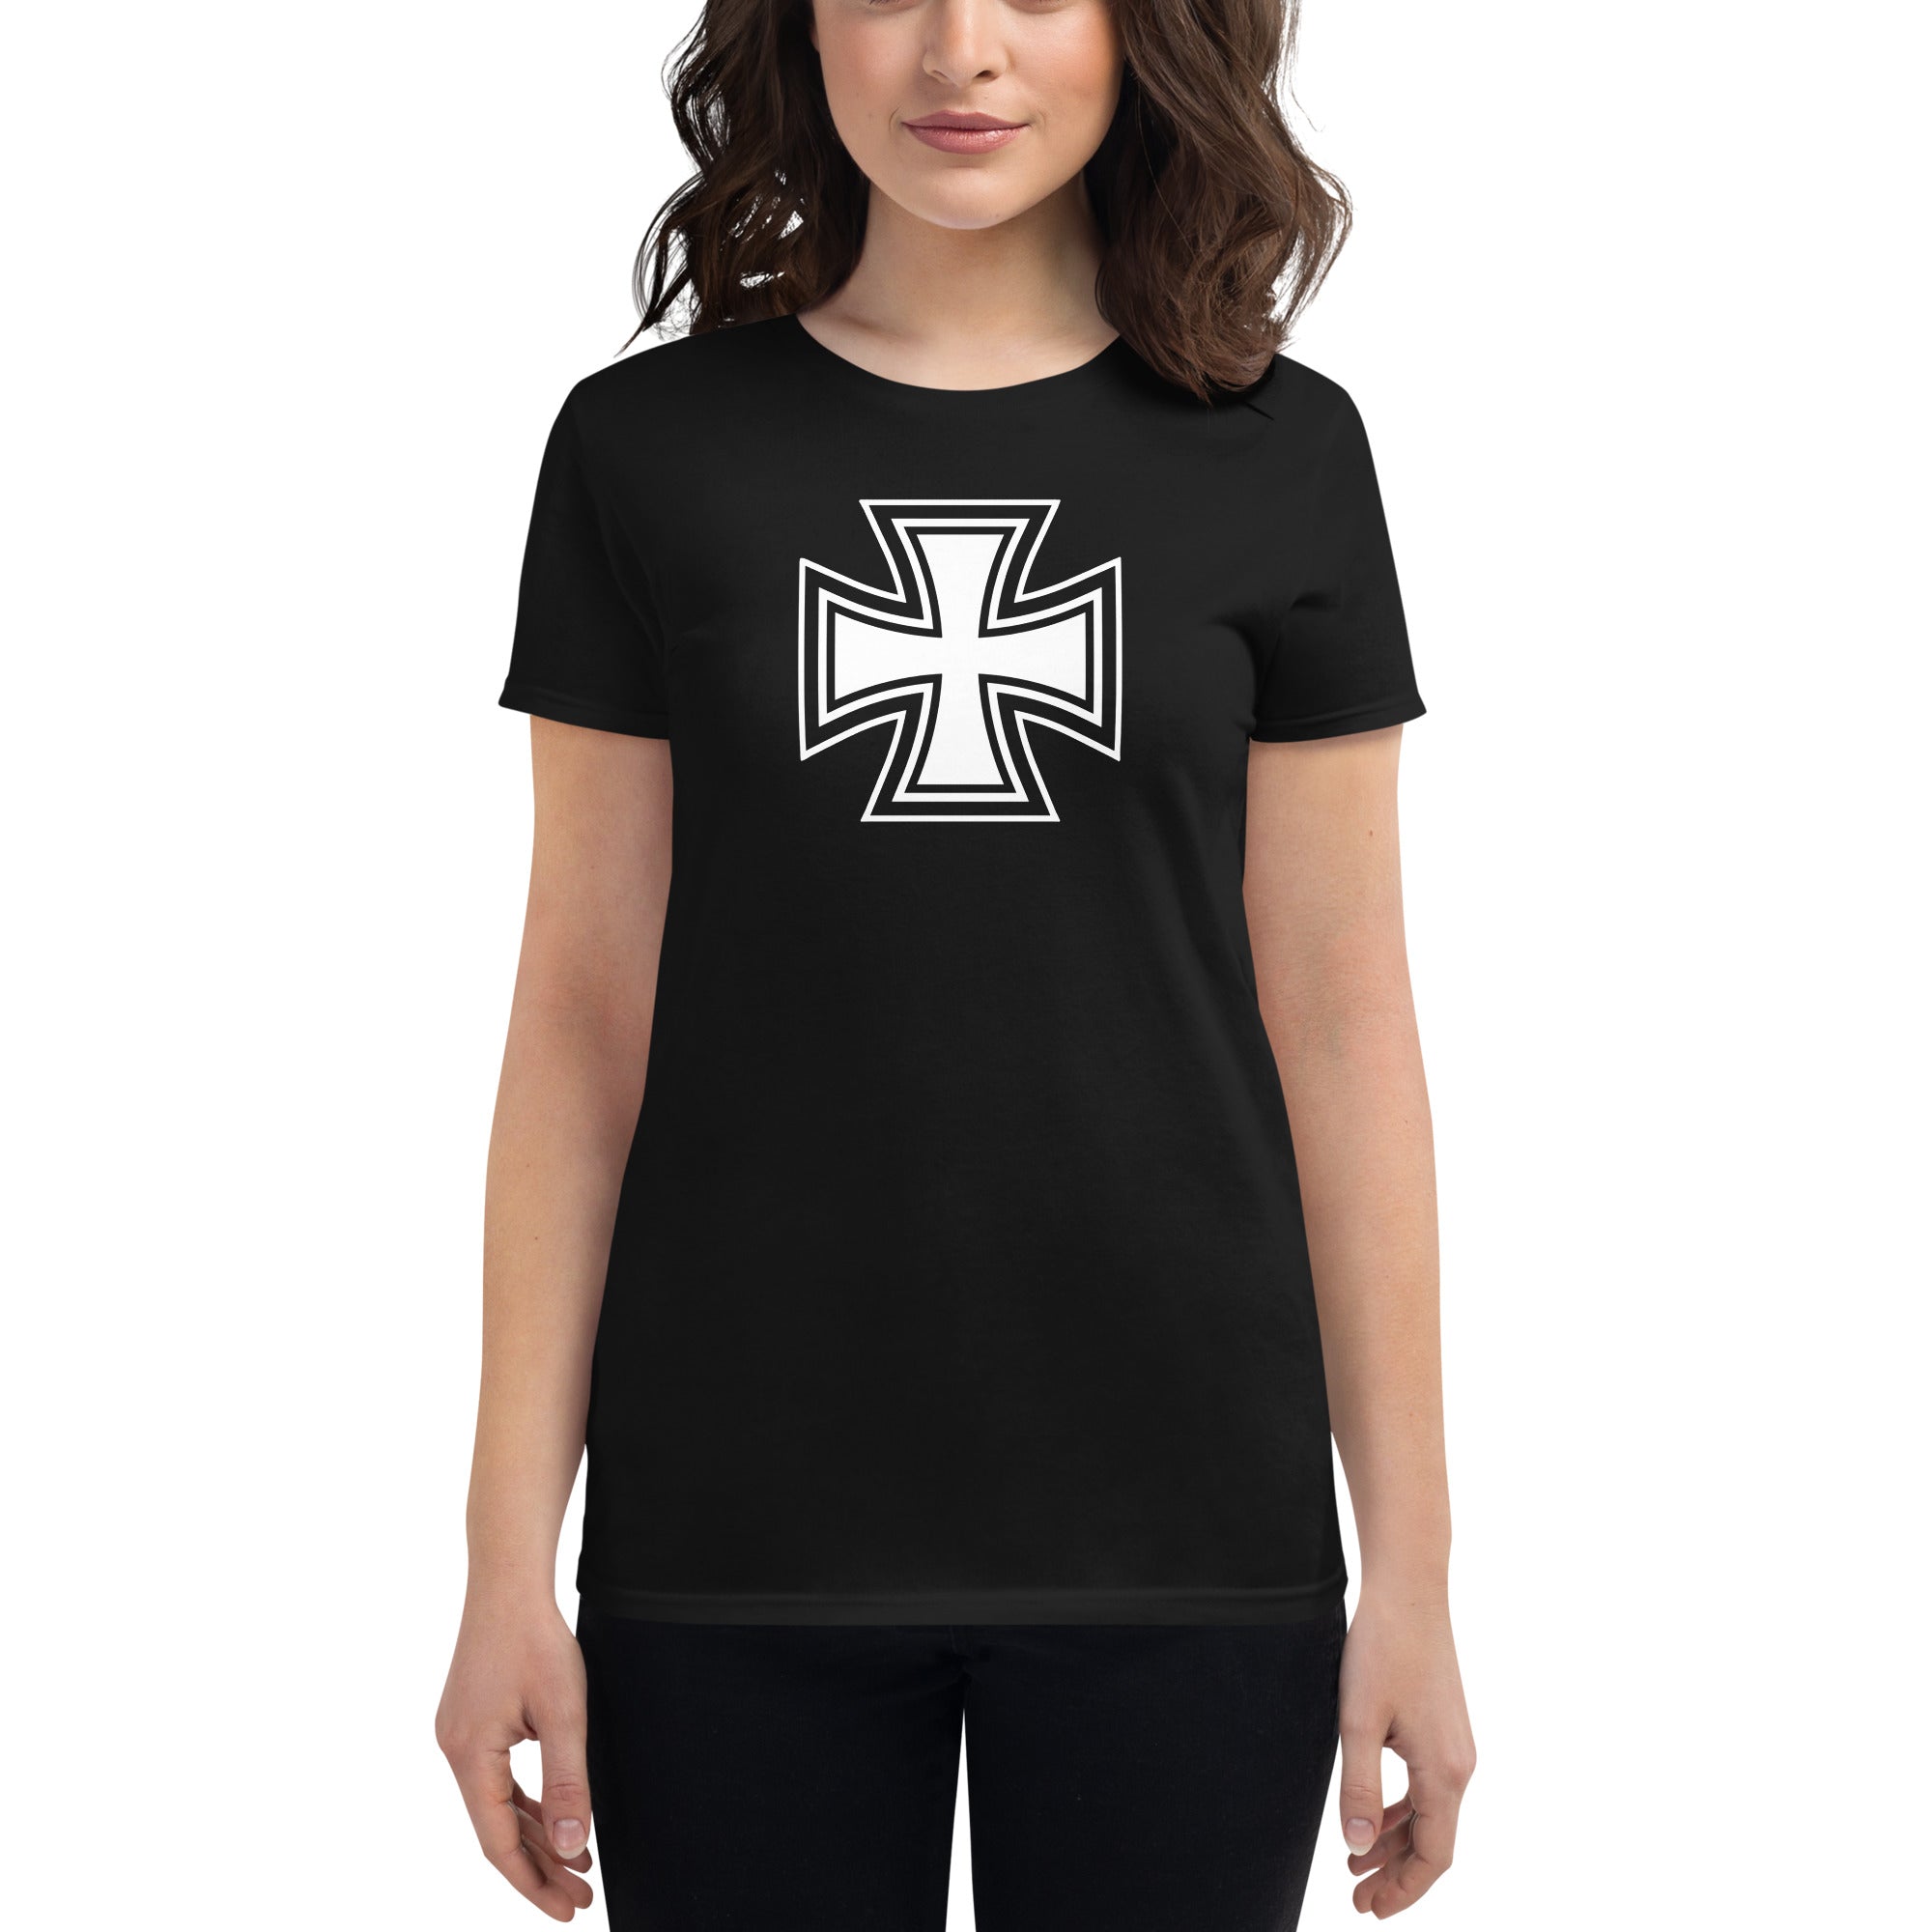 Black and White Occult Biker Cross Symbol Women's Short Sleeve Babydoll T-shirt